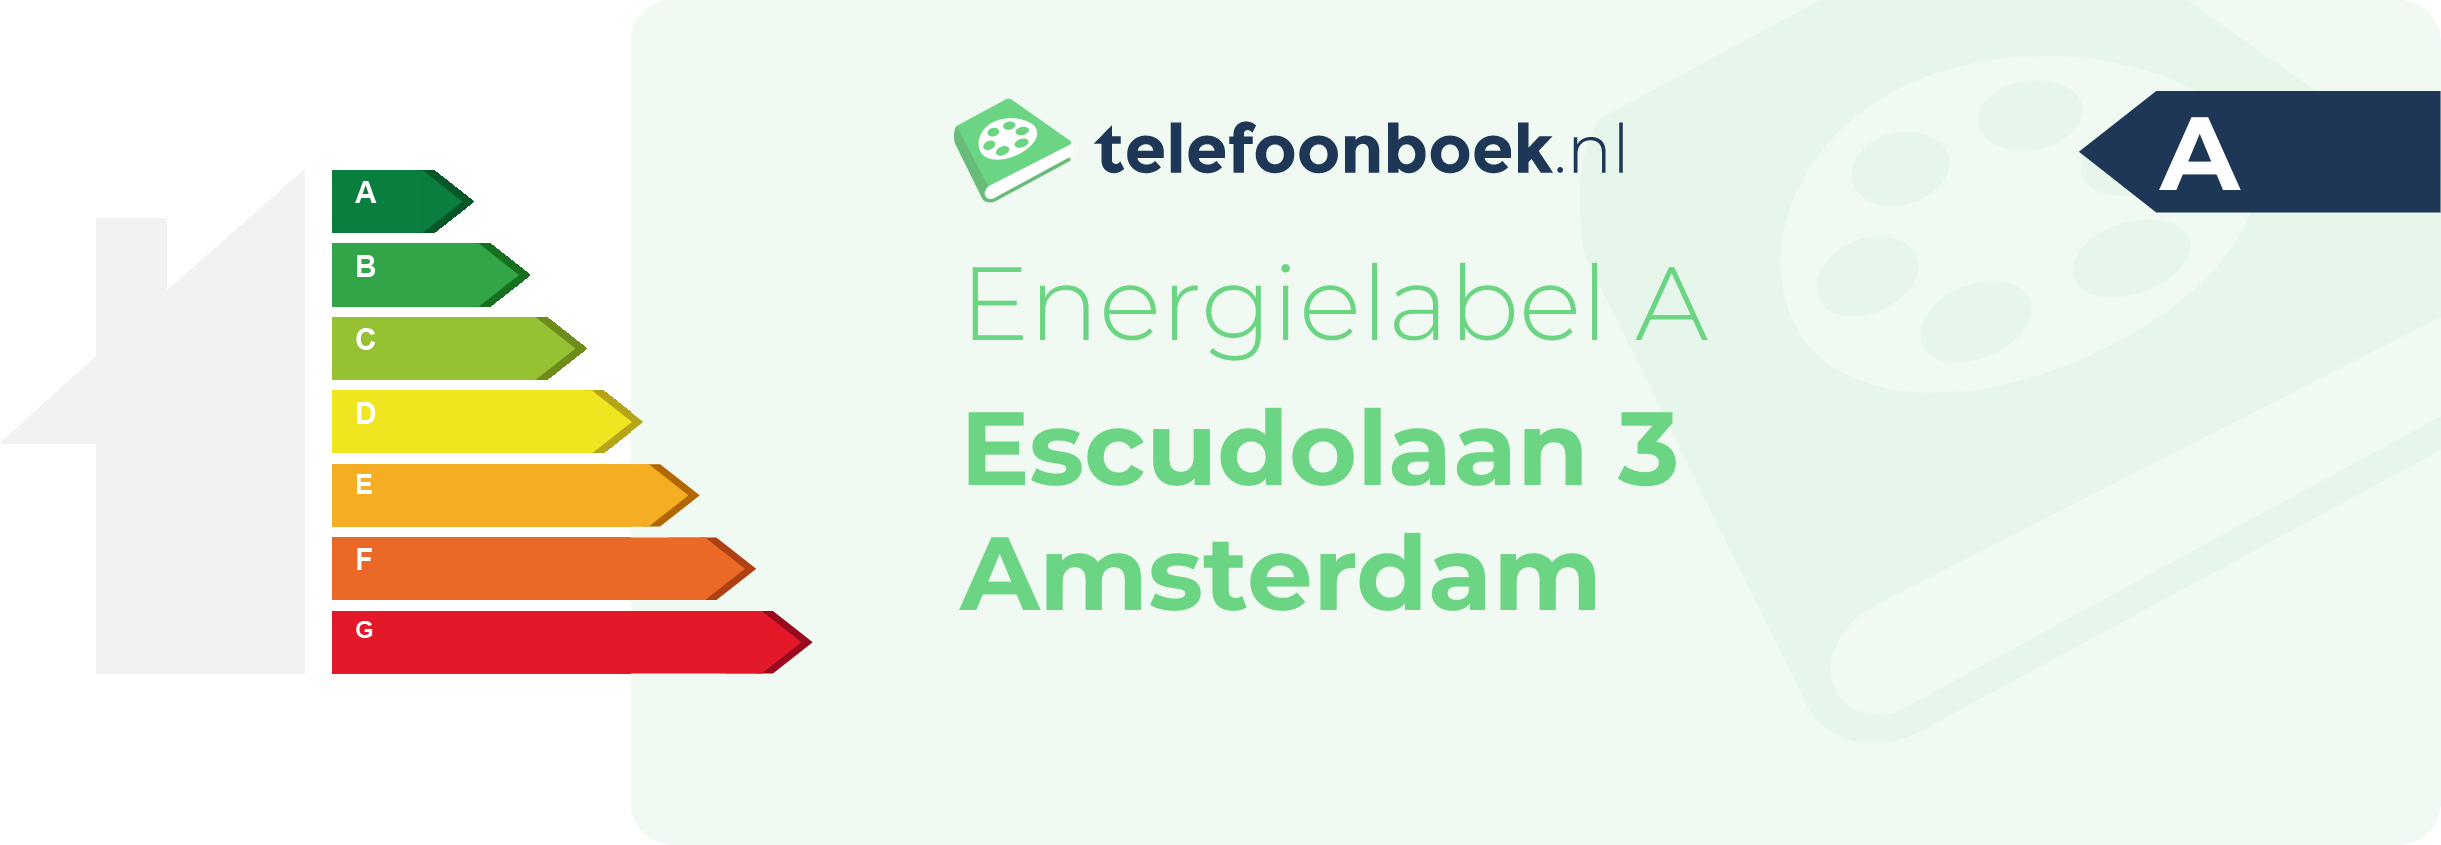 Energielabel Escudolaan 3 Amsterdam